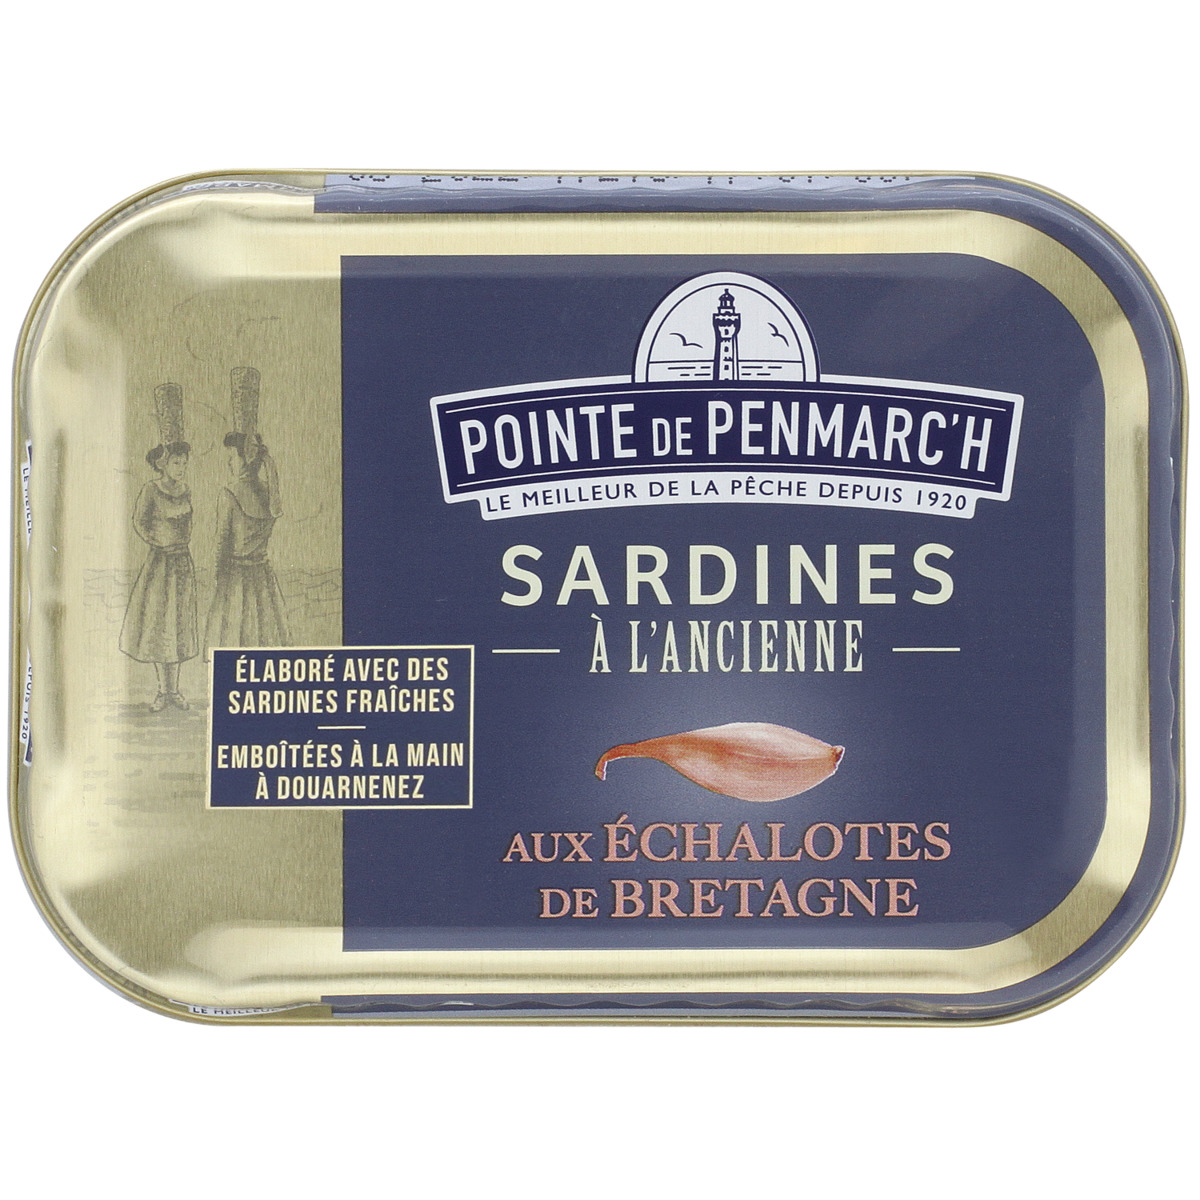 CARTON de 20 boites de Sardines à l'ancienne en boite 140 g - Ortiz